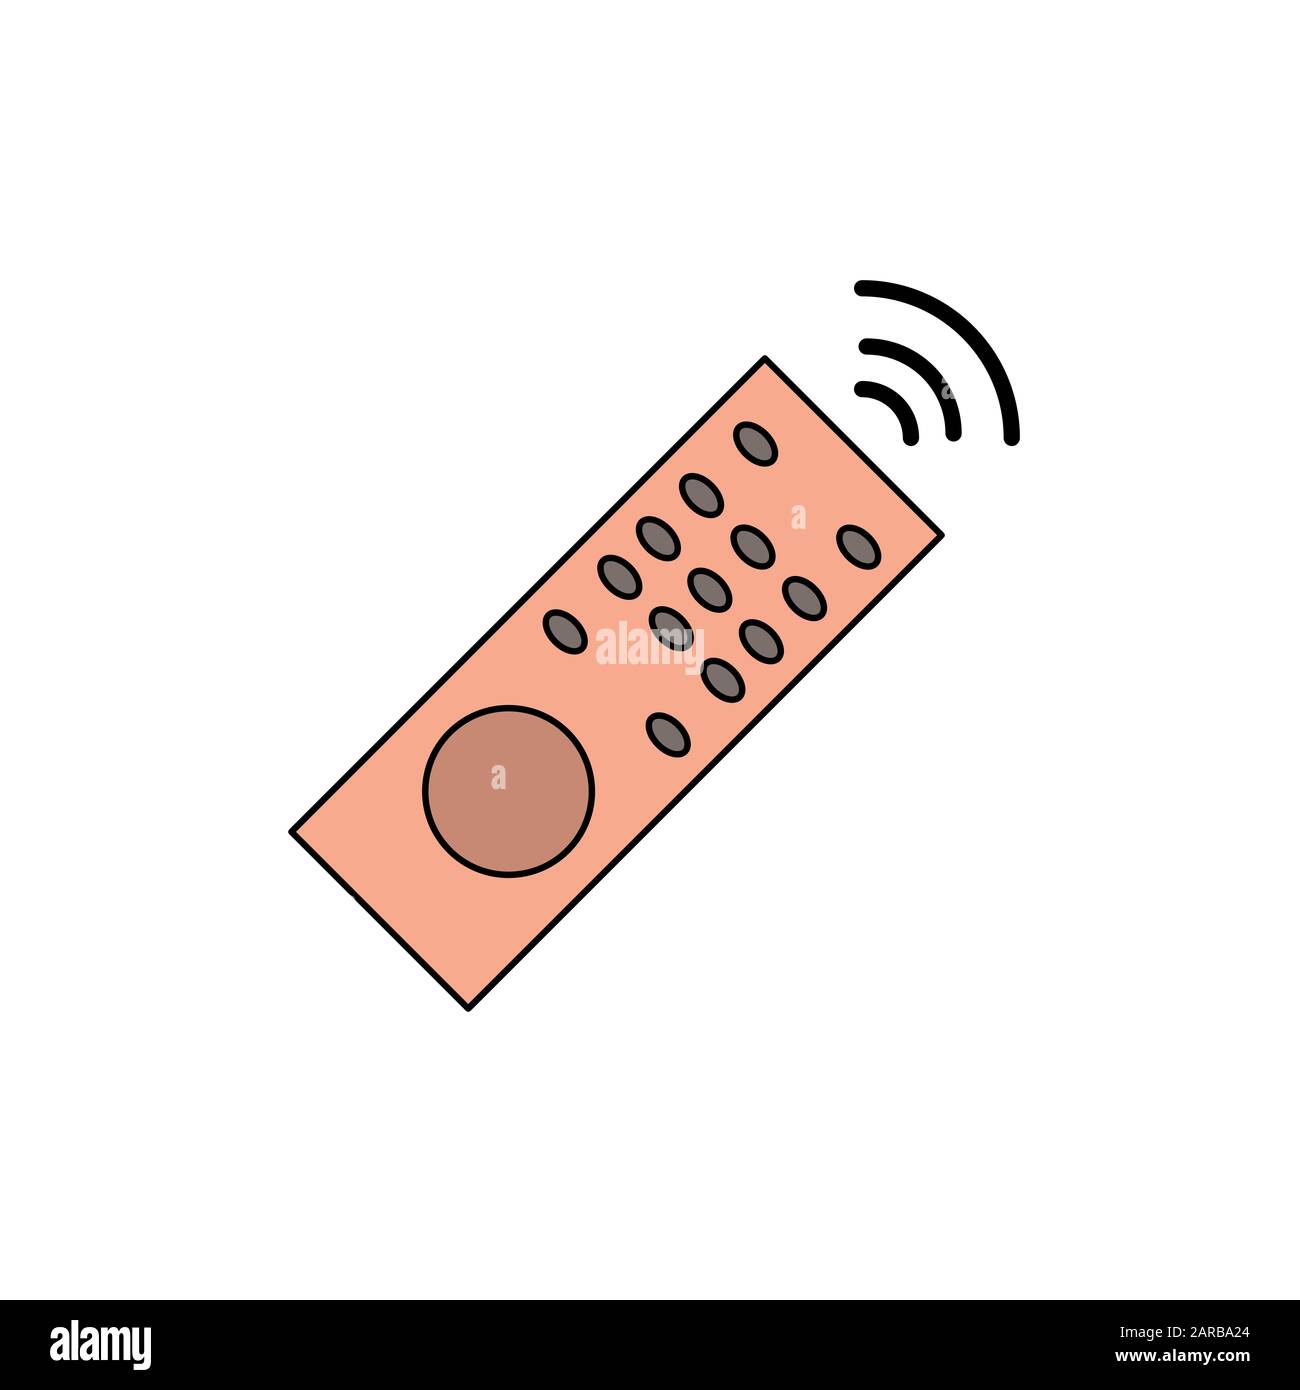 Remote control icon design template Stock Photo